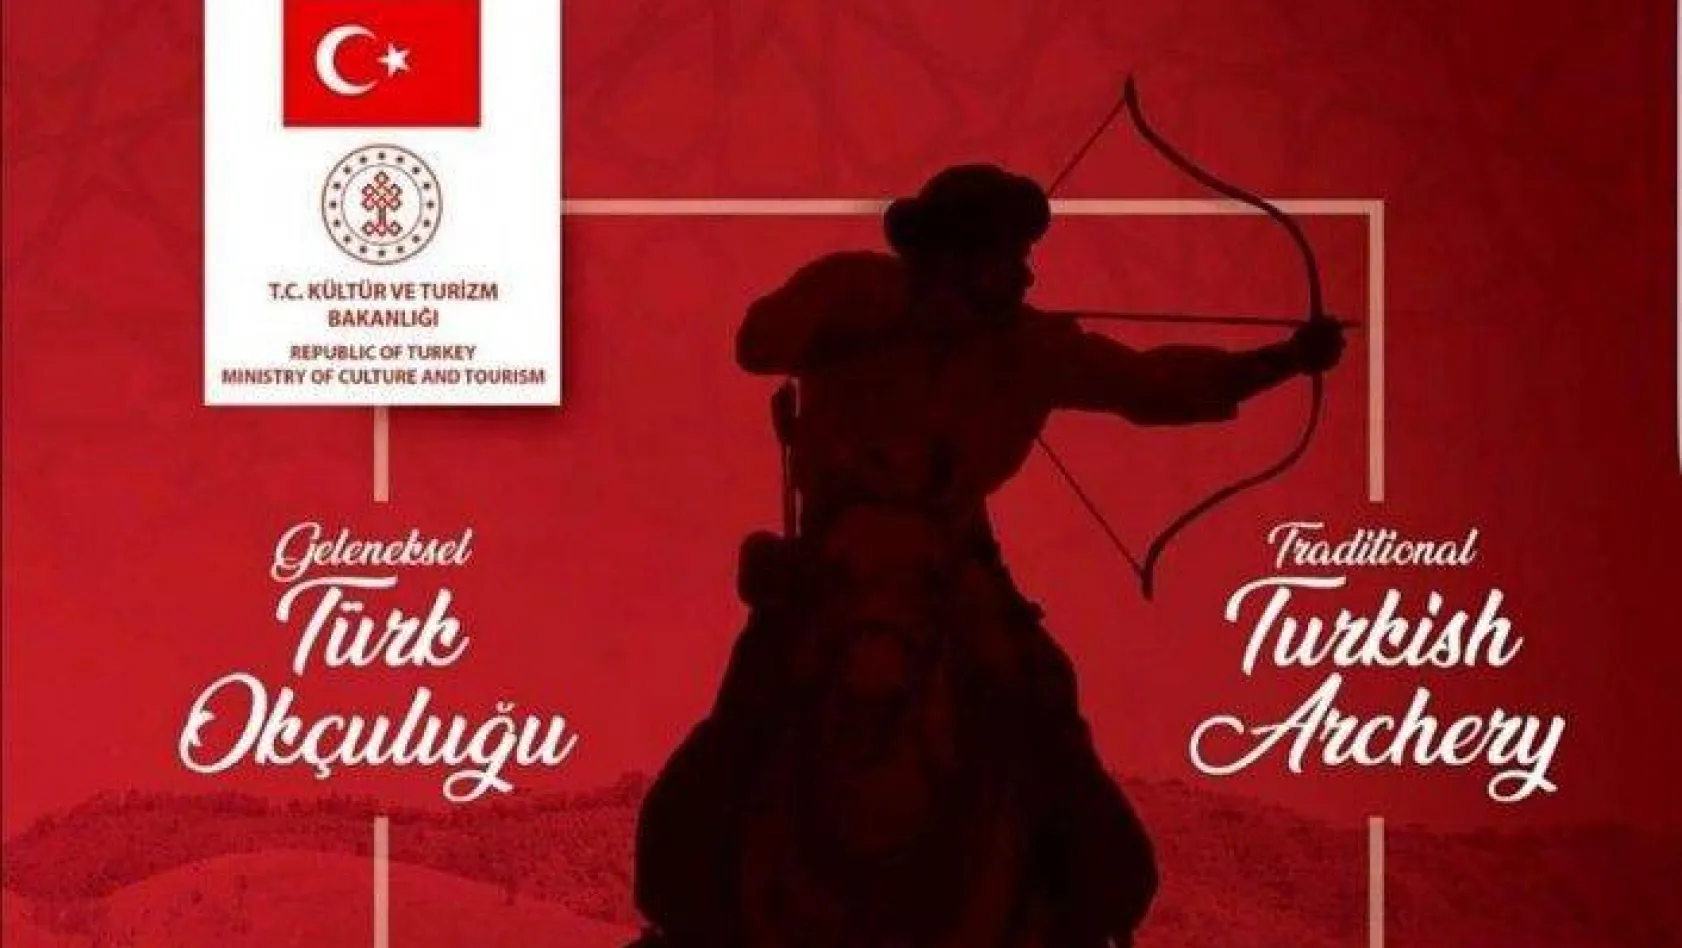 Türk okçuluğu UNESCO tarafından insanlığın ortak mirası ilan edildi